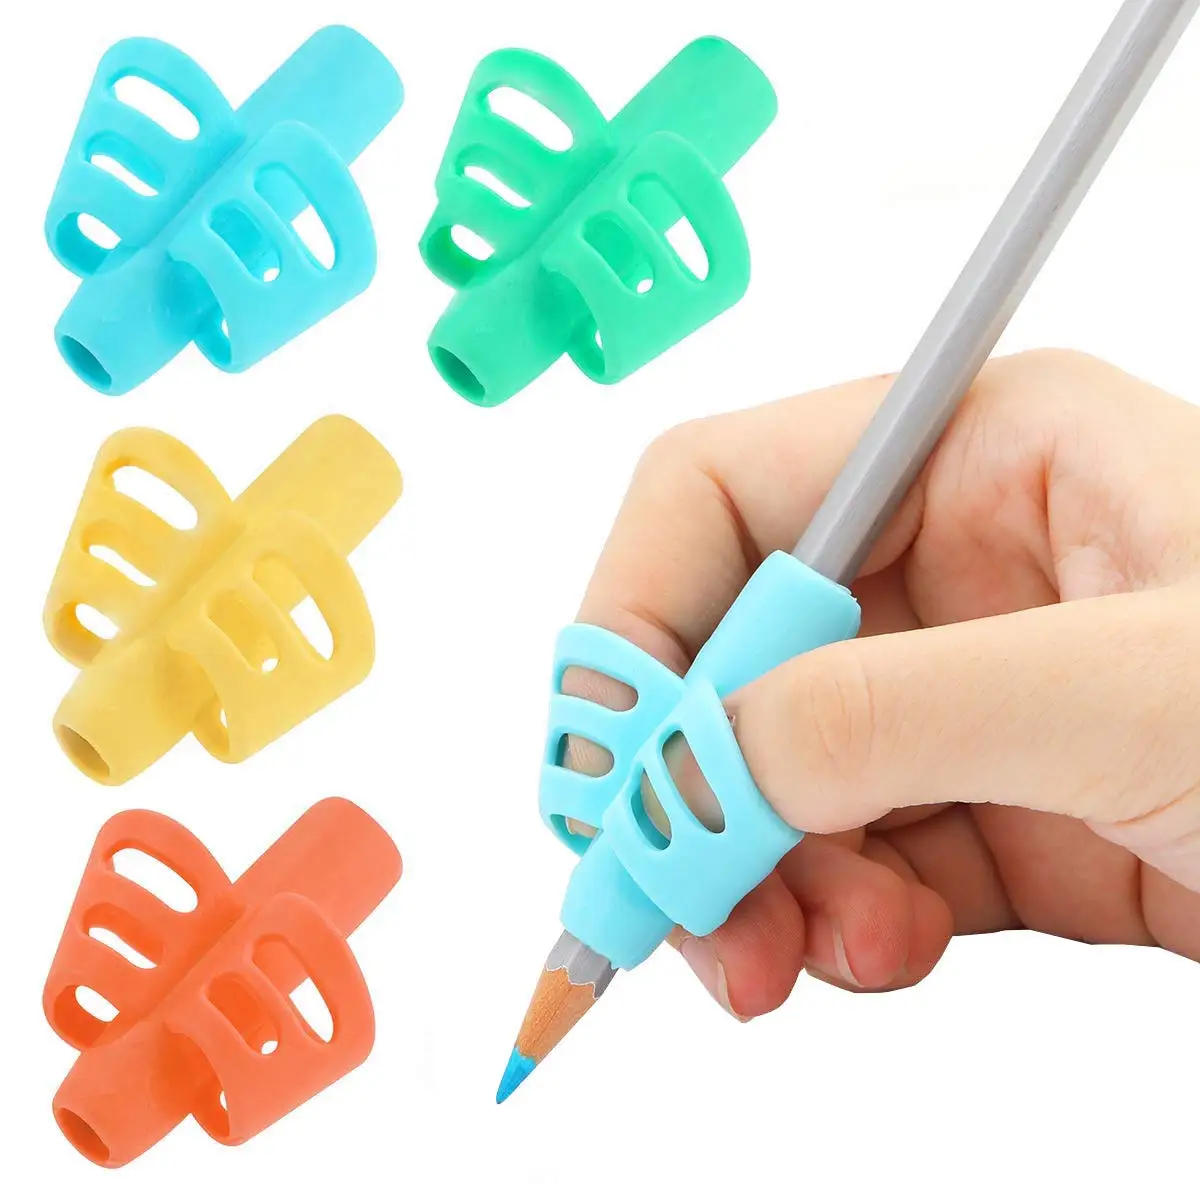 Details about   1Pcs Practical Pen Pencil Holder Kids Writing Aid Grip Posture Correction L8G0 